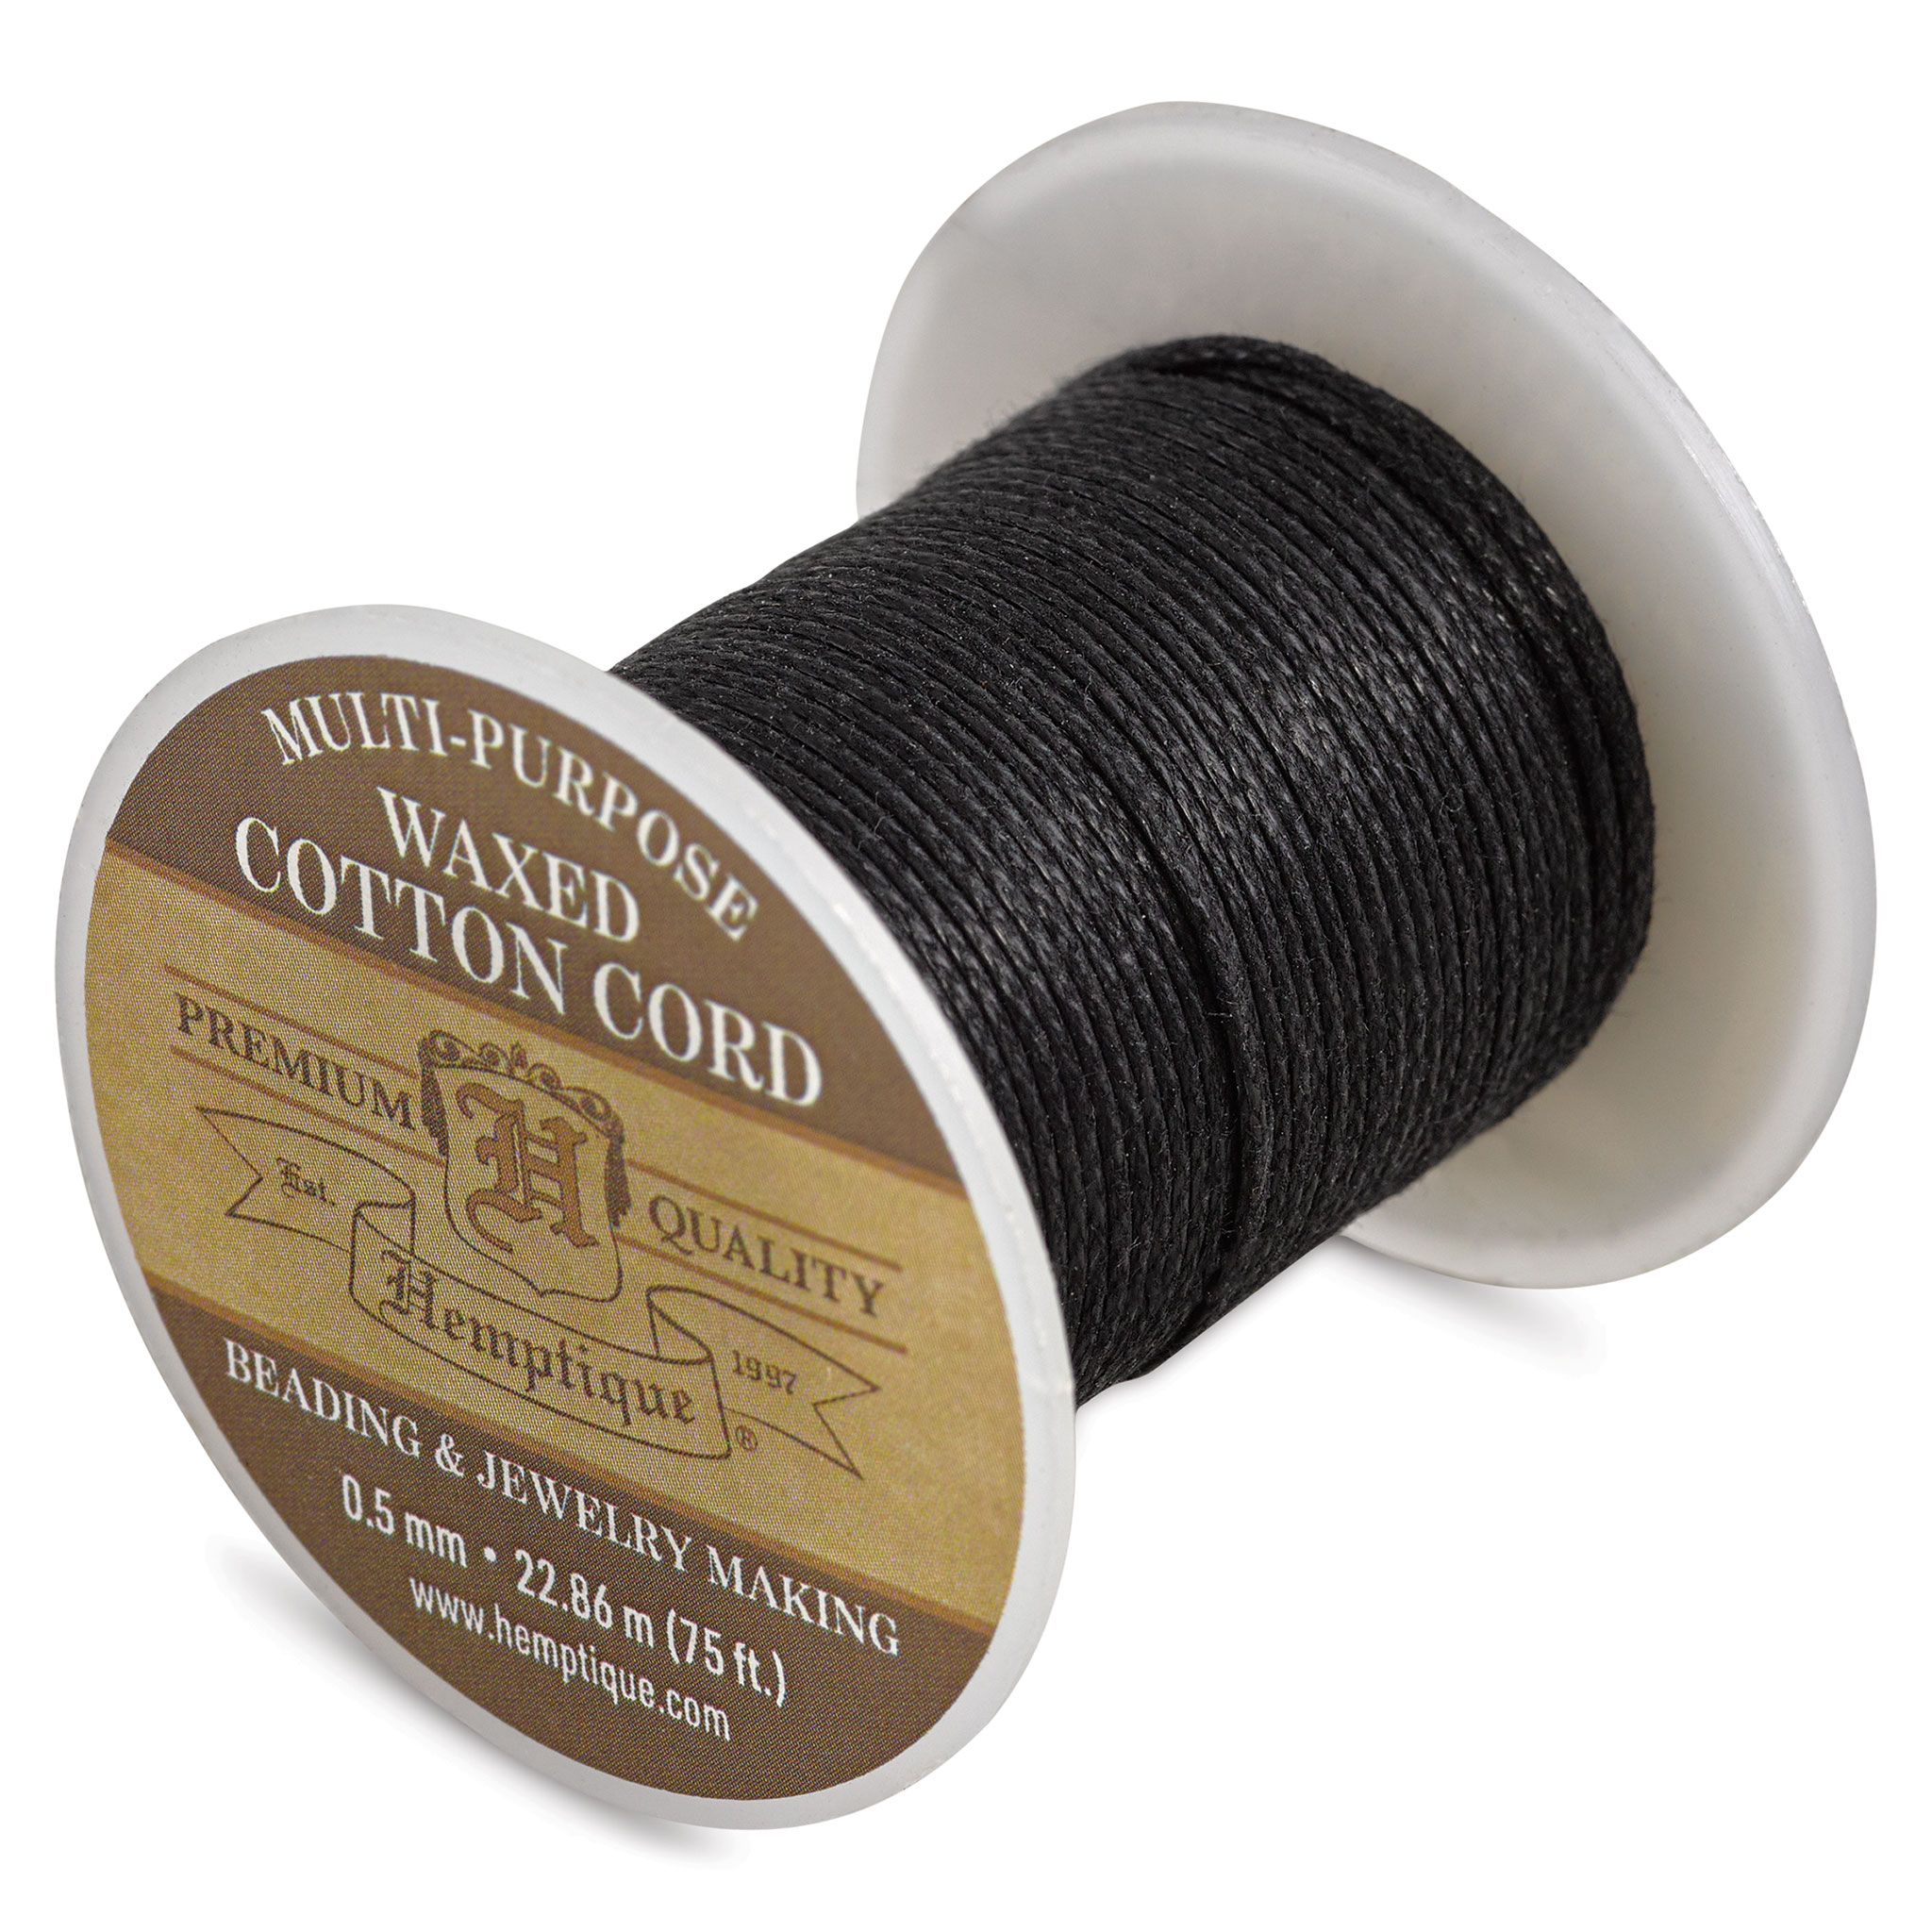 Hemptique Waxed Cotton Cord - Black, 0.5 mm